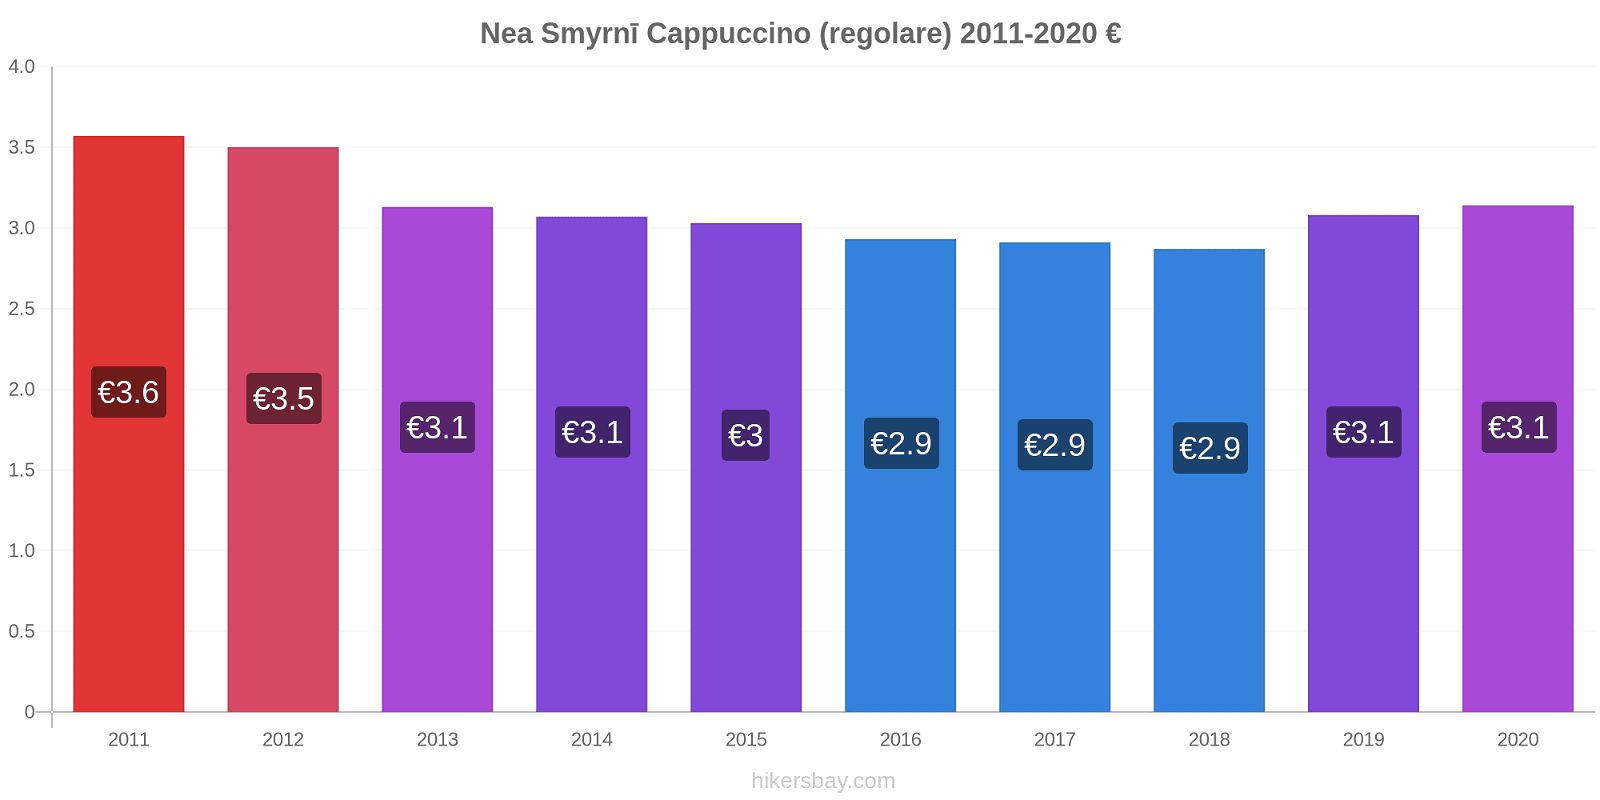 Nea Smyrnī variazioni di prezzo Cappuccino (normale) hikersbay.com